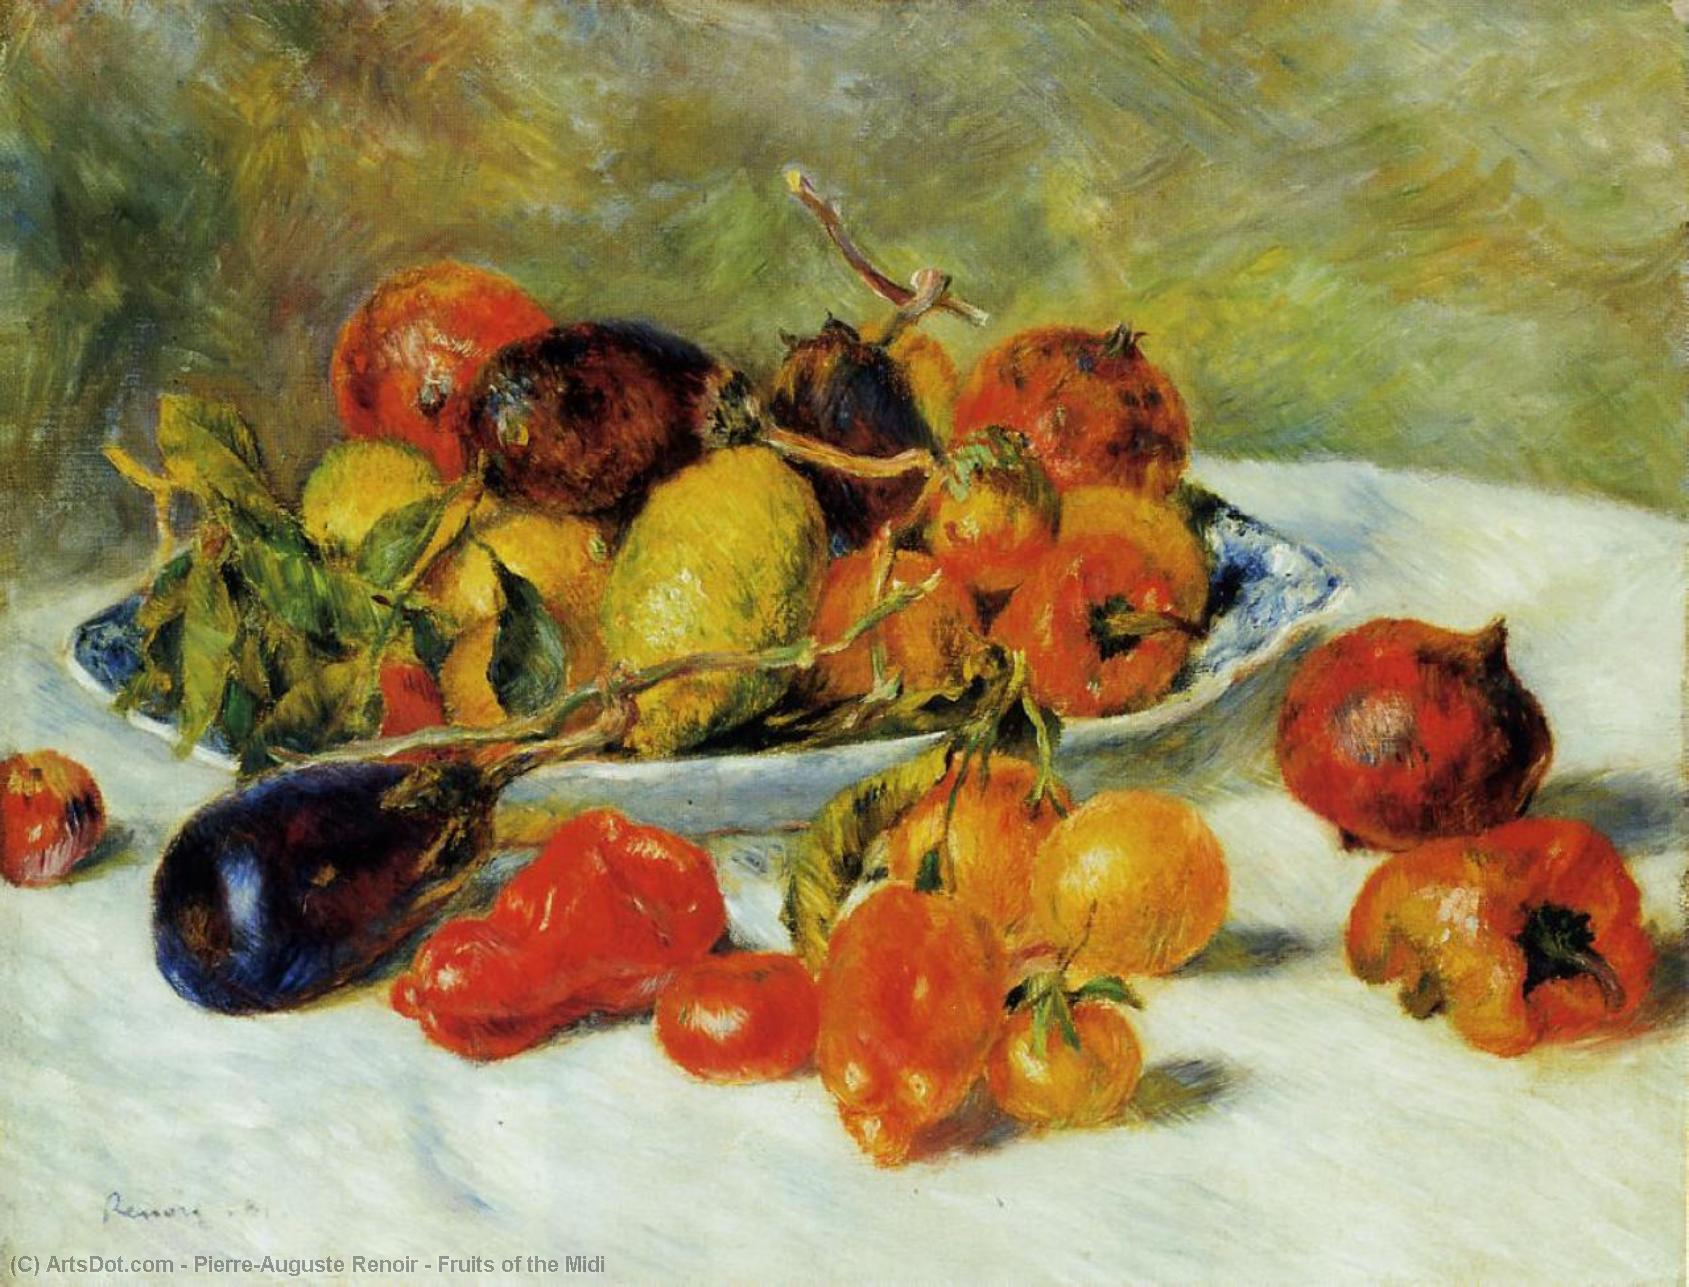 Compre Museu De Reproduções De Arte Frutas do Midi, 1881 por Pierre-Auguste Renoir (1841-1919, France) | ArtsDot.com